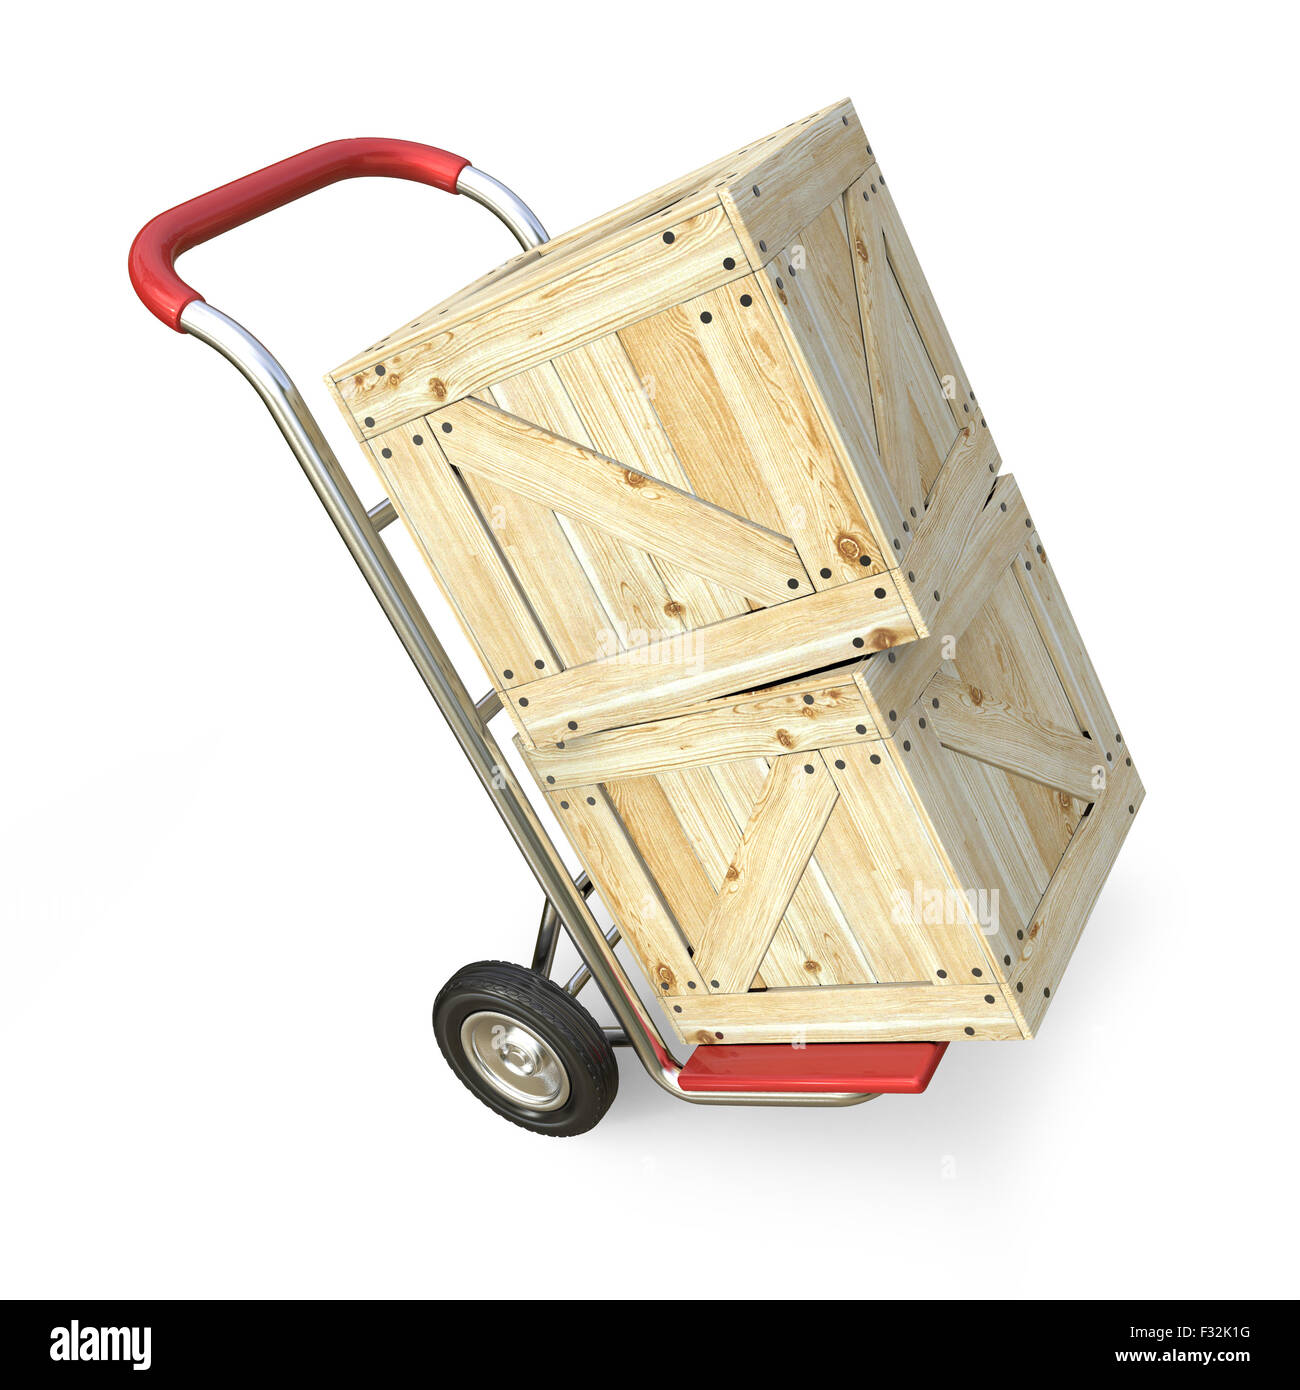 Camion de main avec boîte en bois. Concept de livraison. Rendu 3D illustration isolé sur fond blanc Banque D'Images